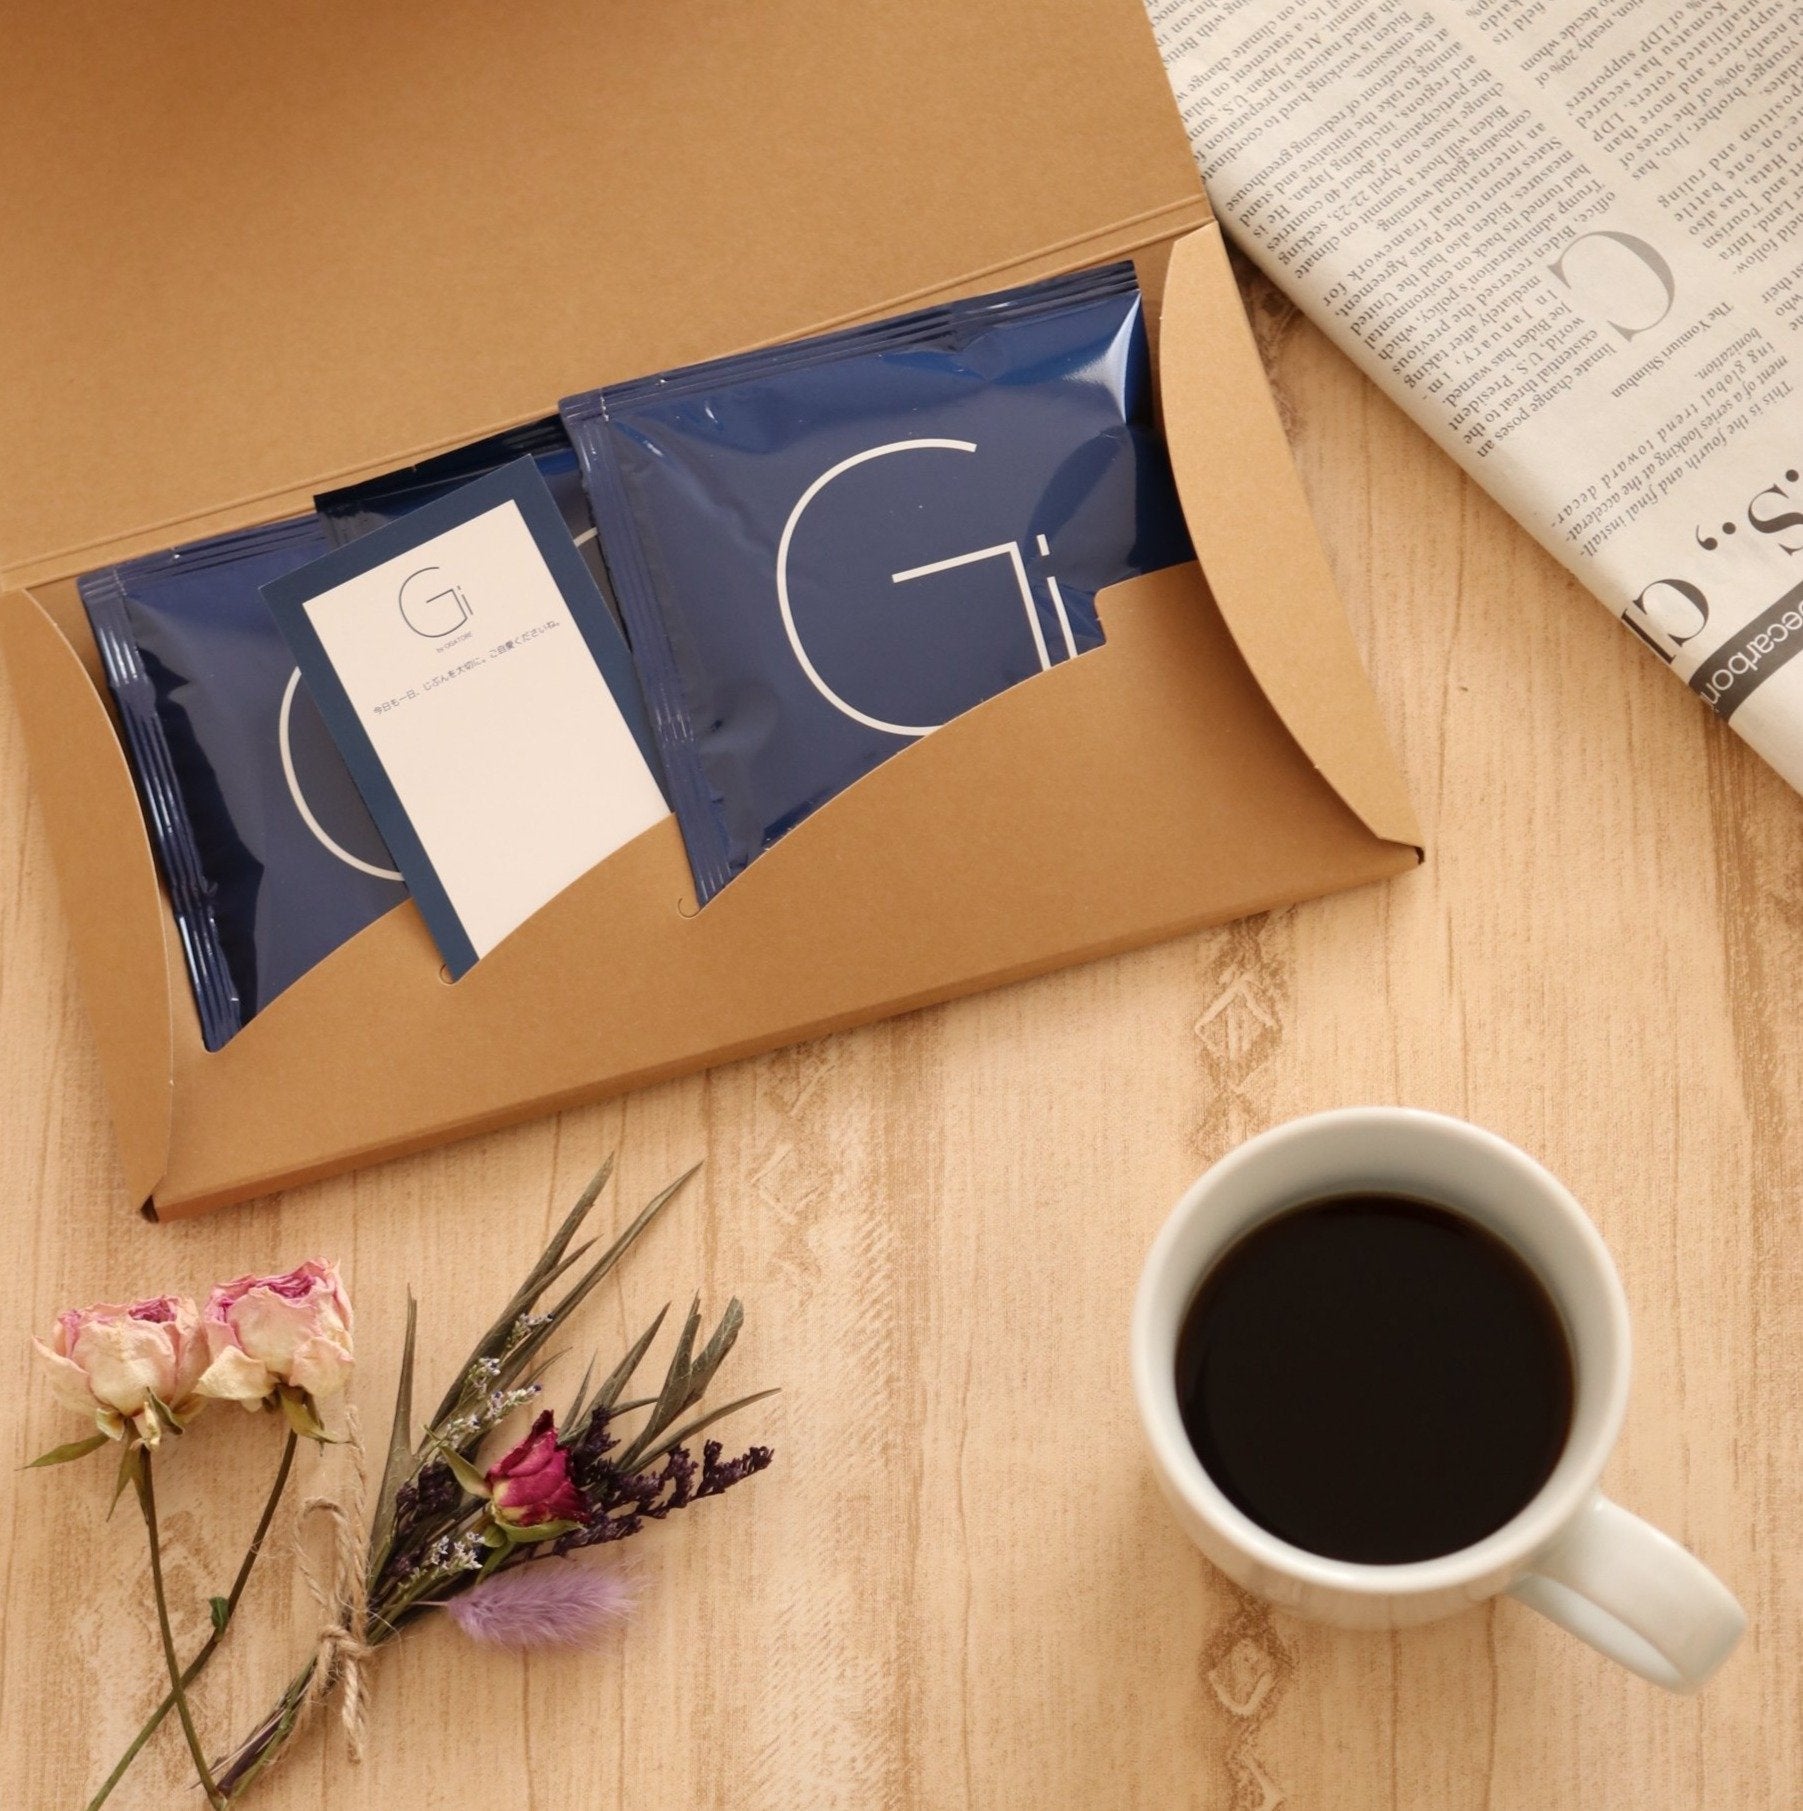 【公式ショップ限定・10袋セット】Giコーヒー こだわりのストレッチブレンド ストレッチ専用 簡易包装